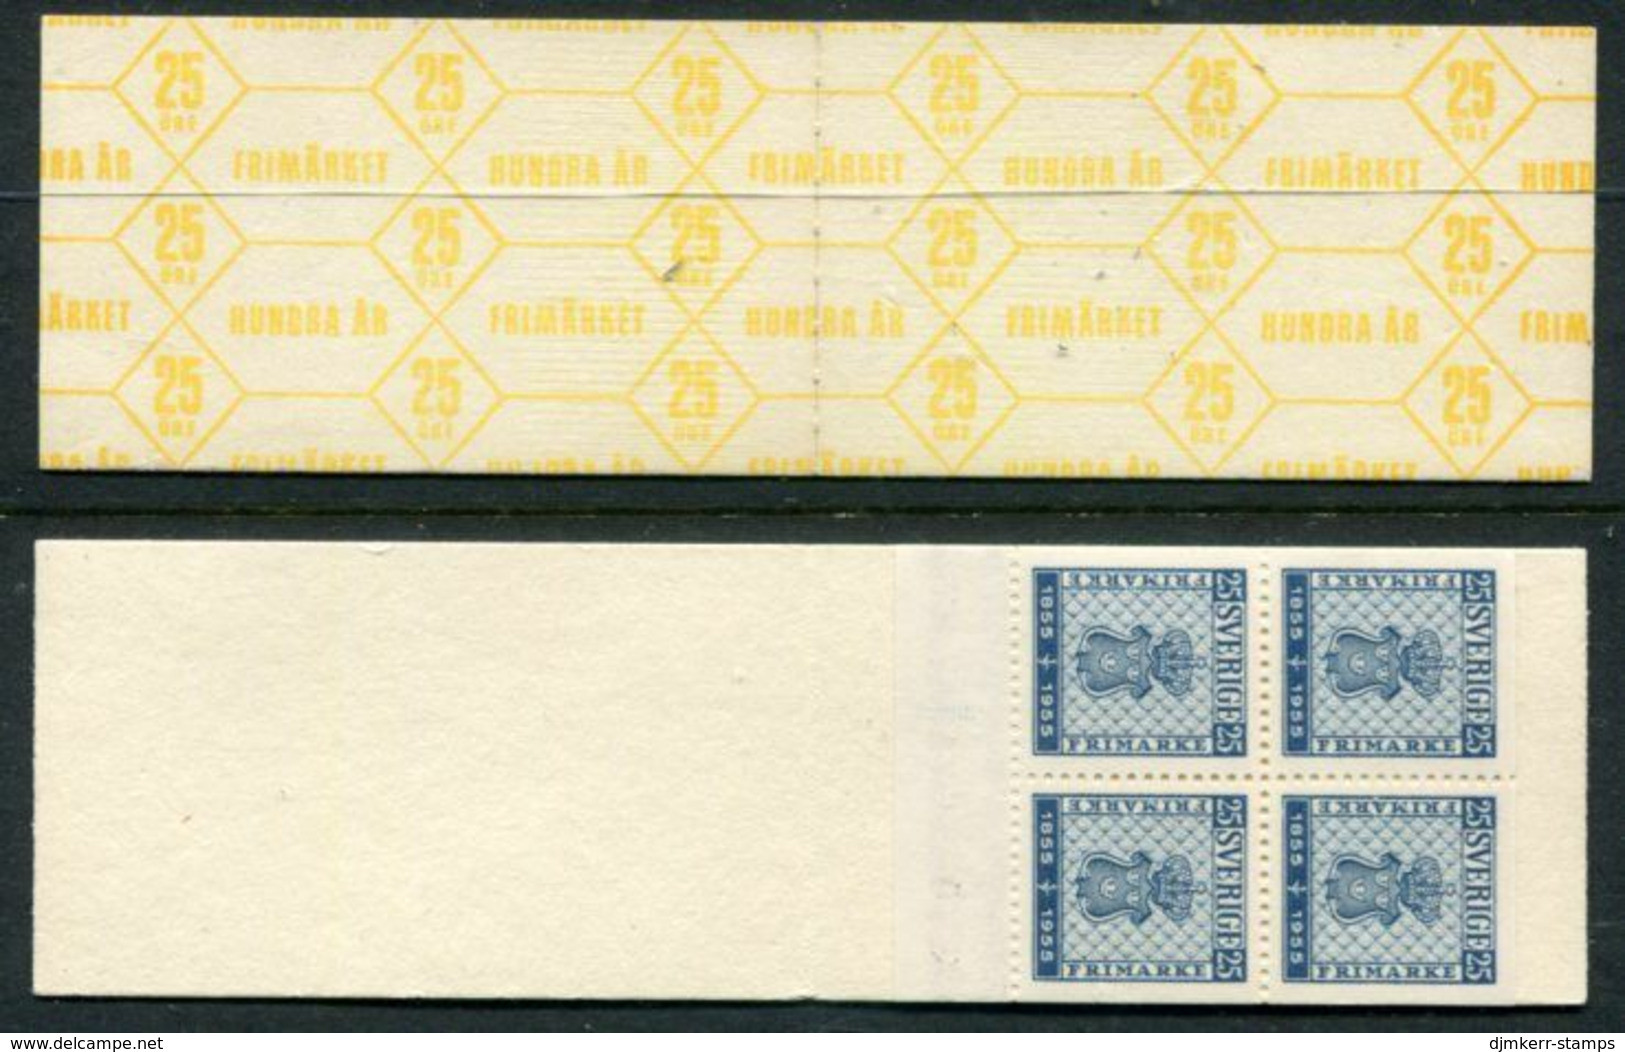 SWEDEN 1955 Stamp Centenary 1 Kr.  Booklet MNH / **.  Michel 402 Dl, Dr, Elo, Ero - 1951-80